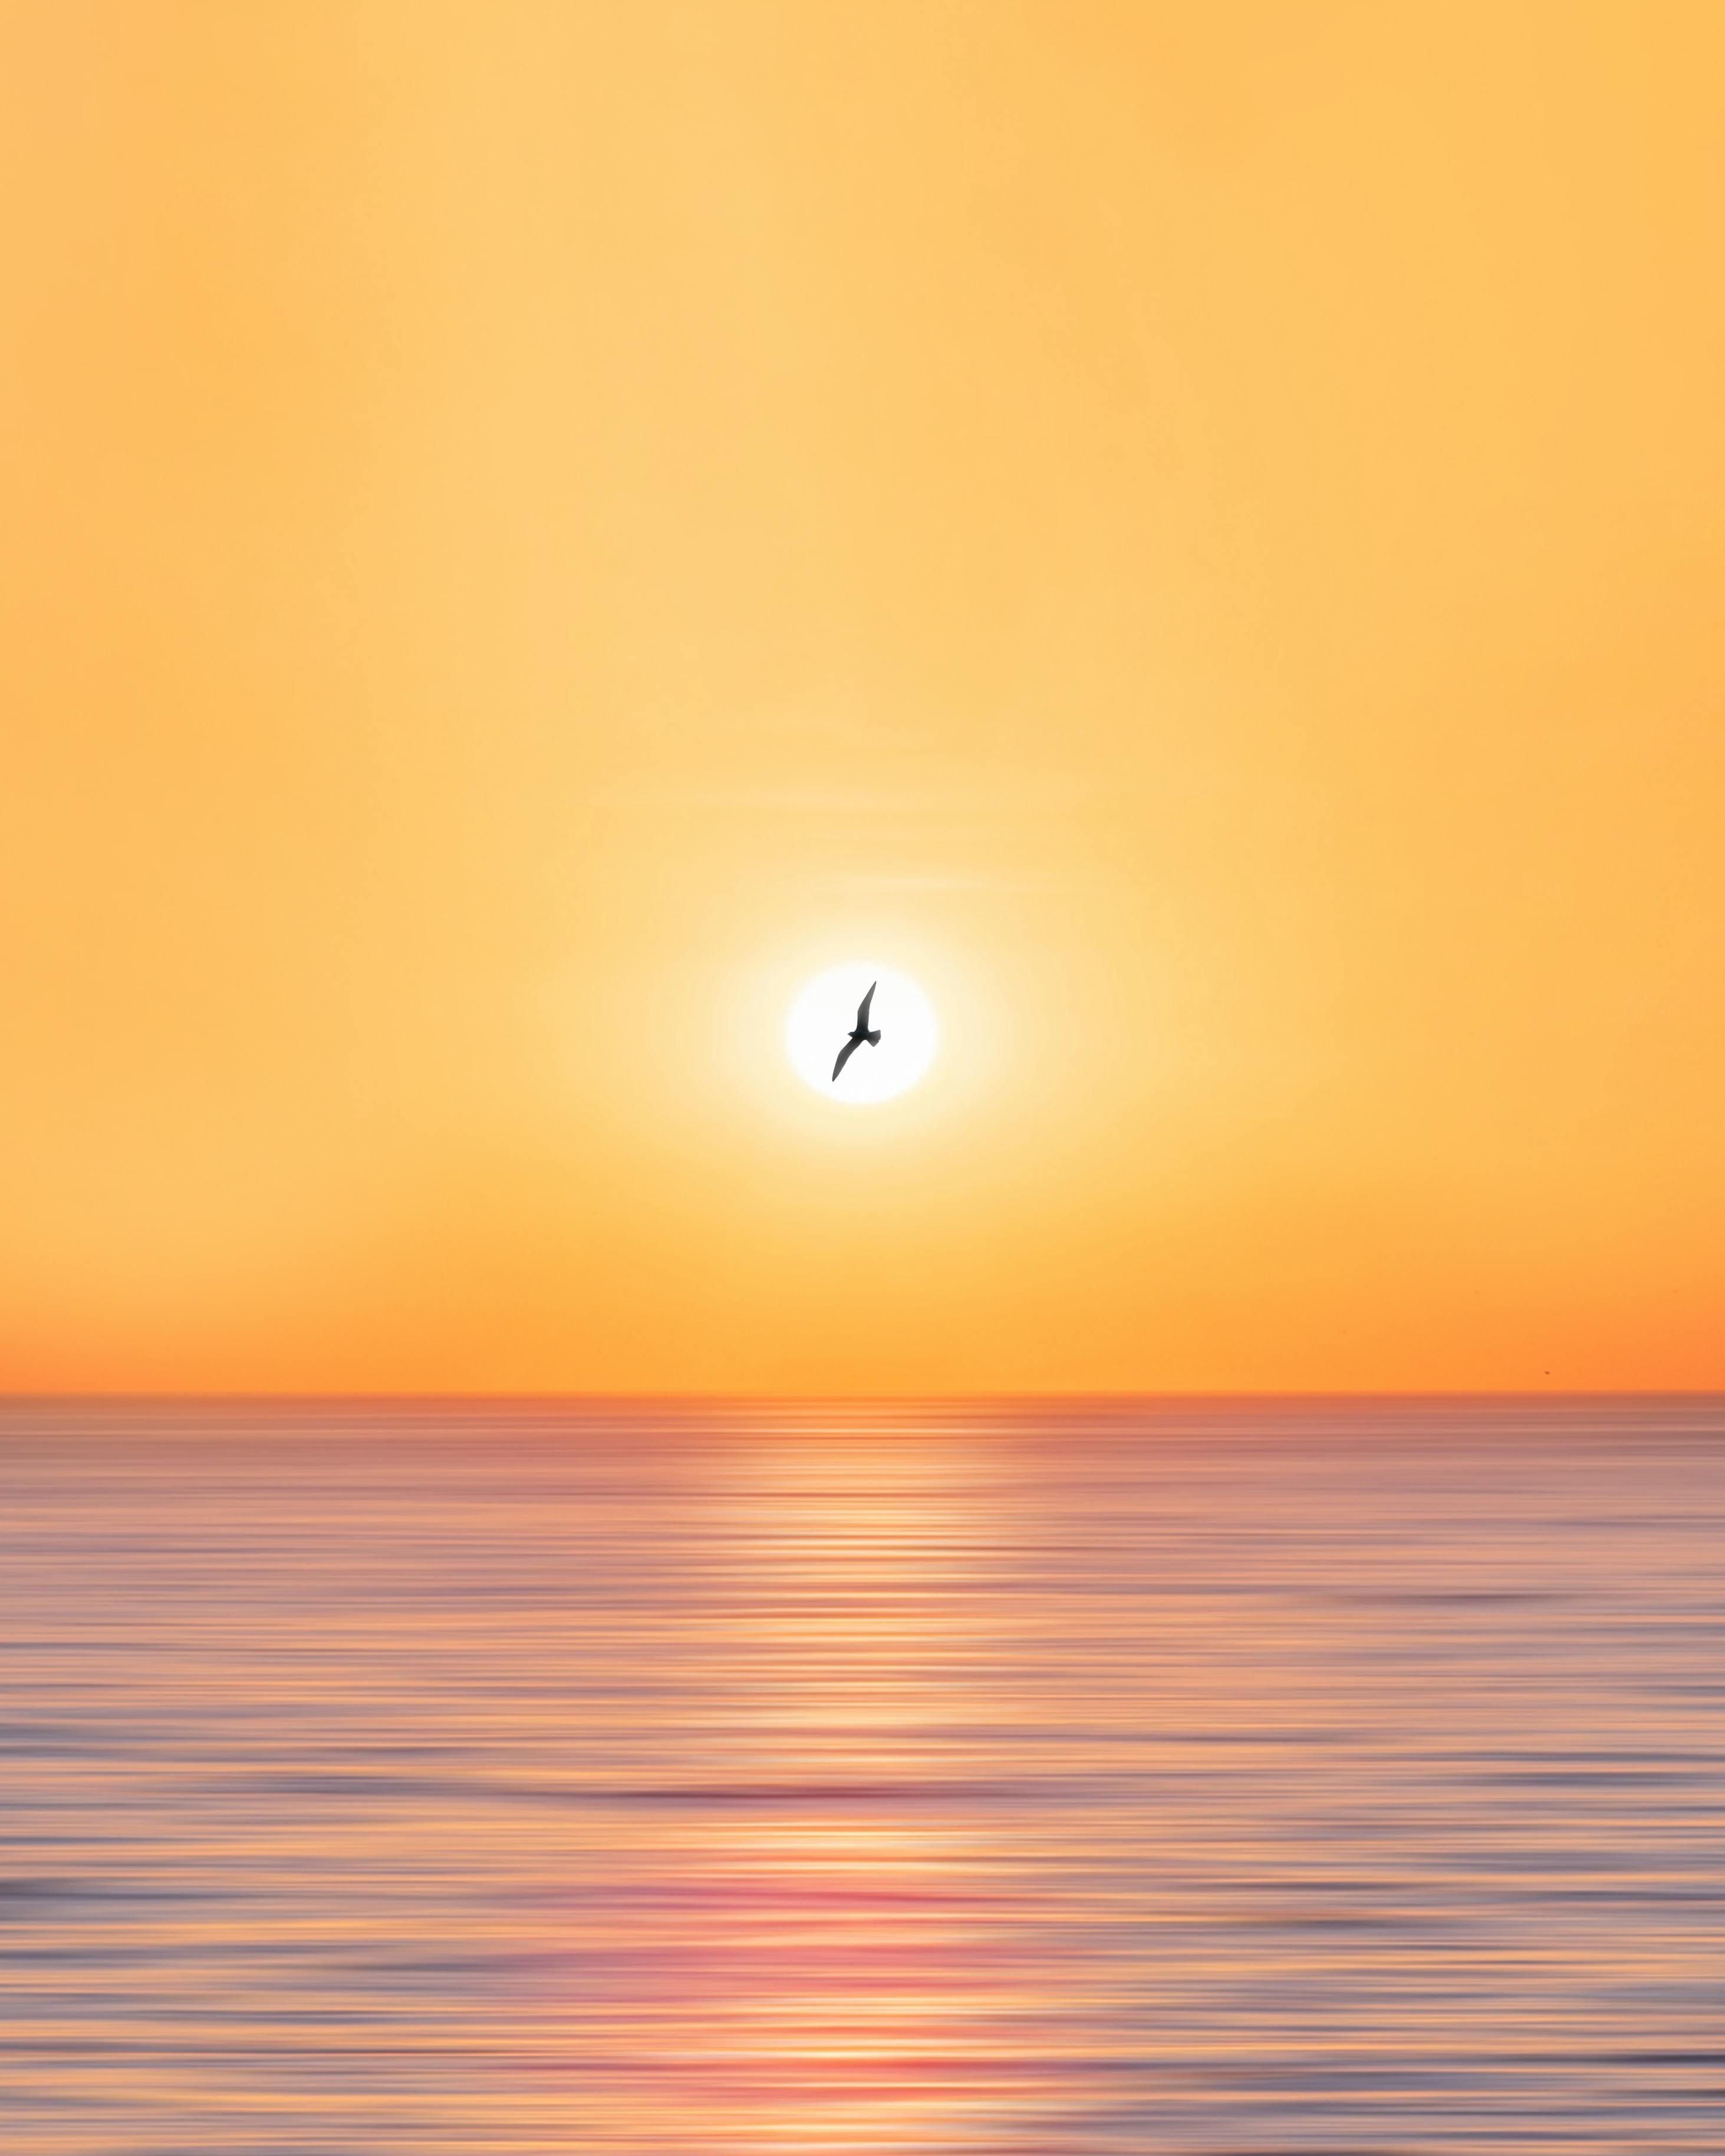 bird flying over the sunset